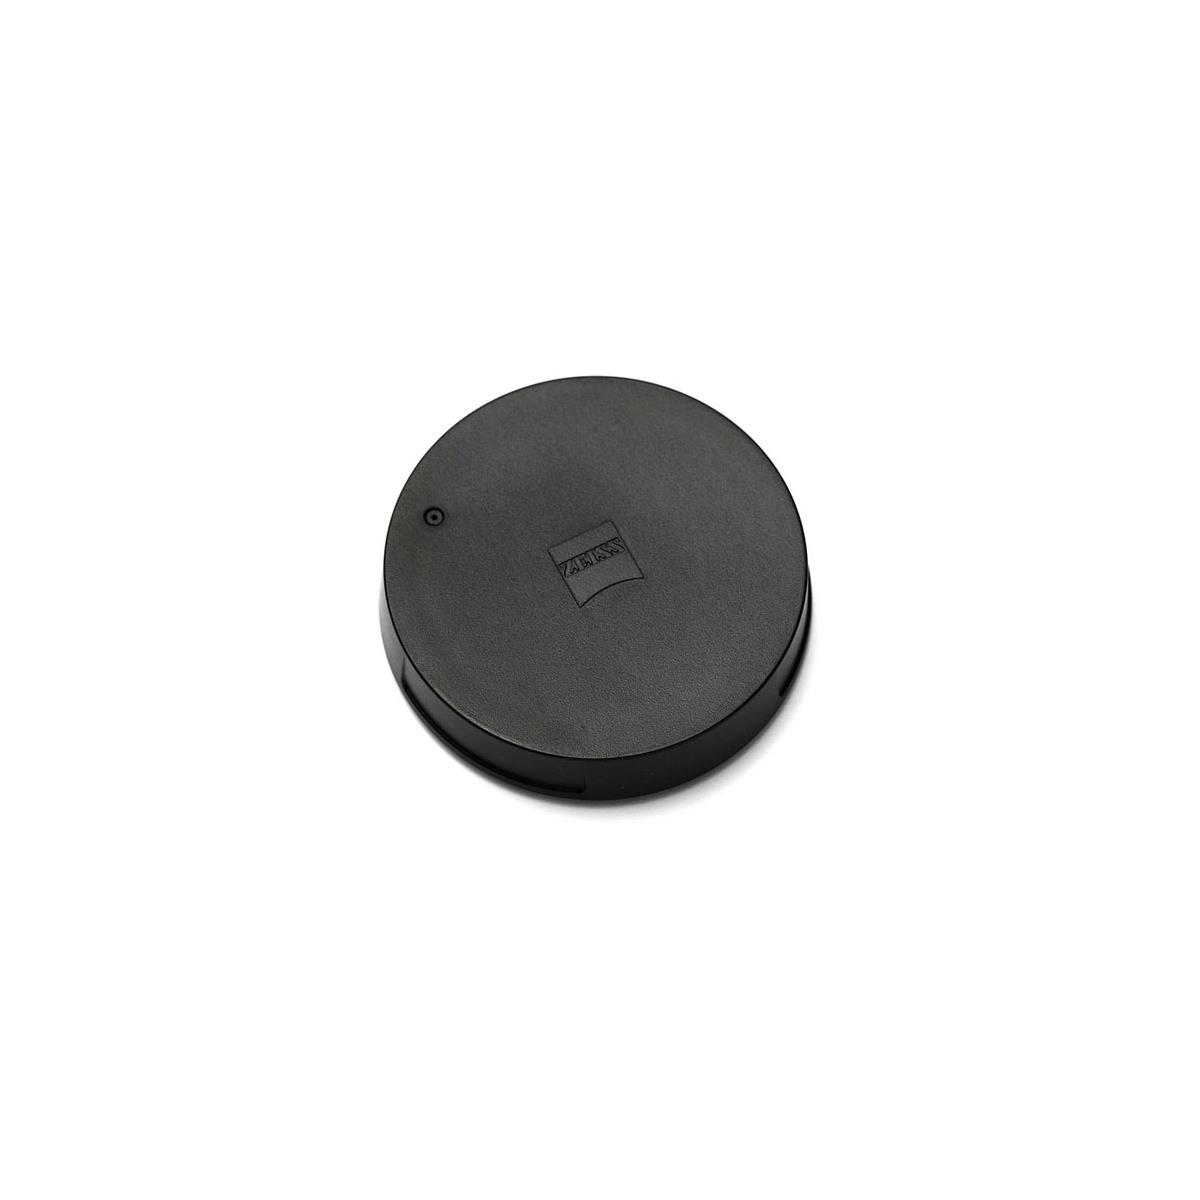 Zeiss Rear cap fits Batis/Touit Lenses 